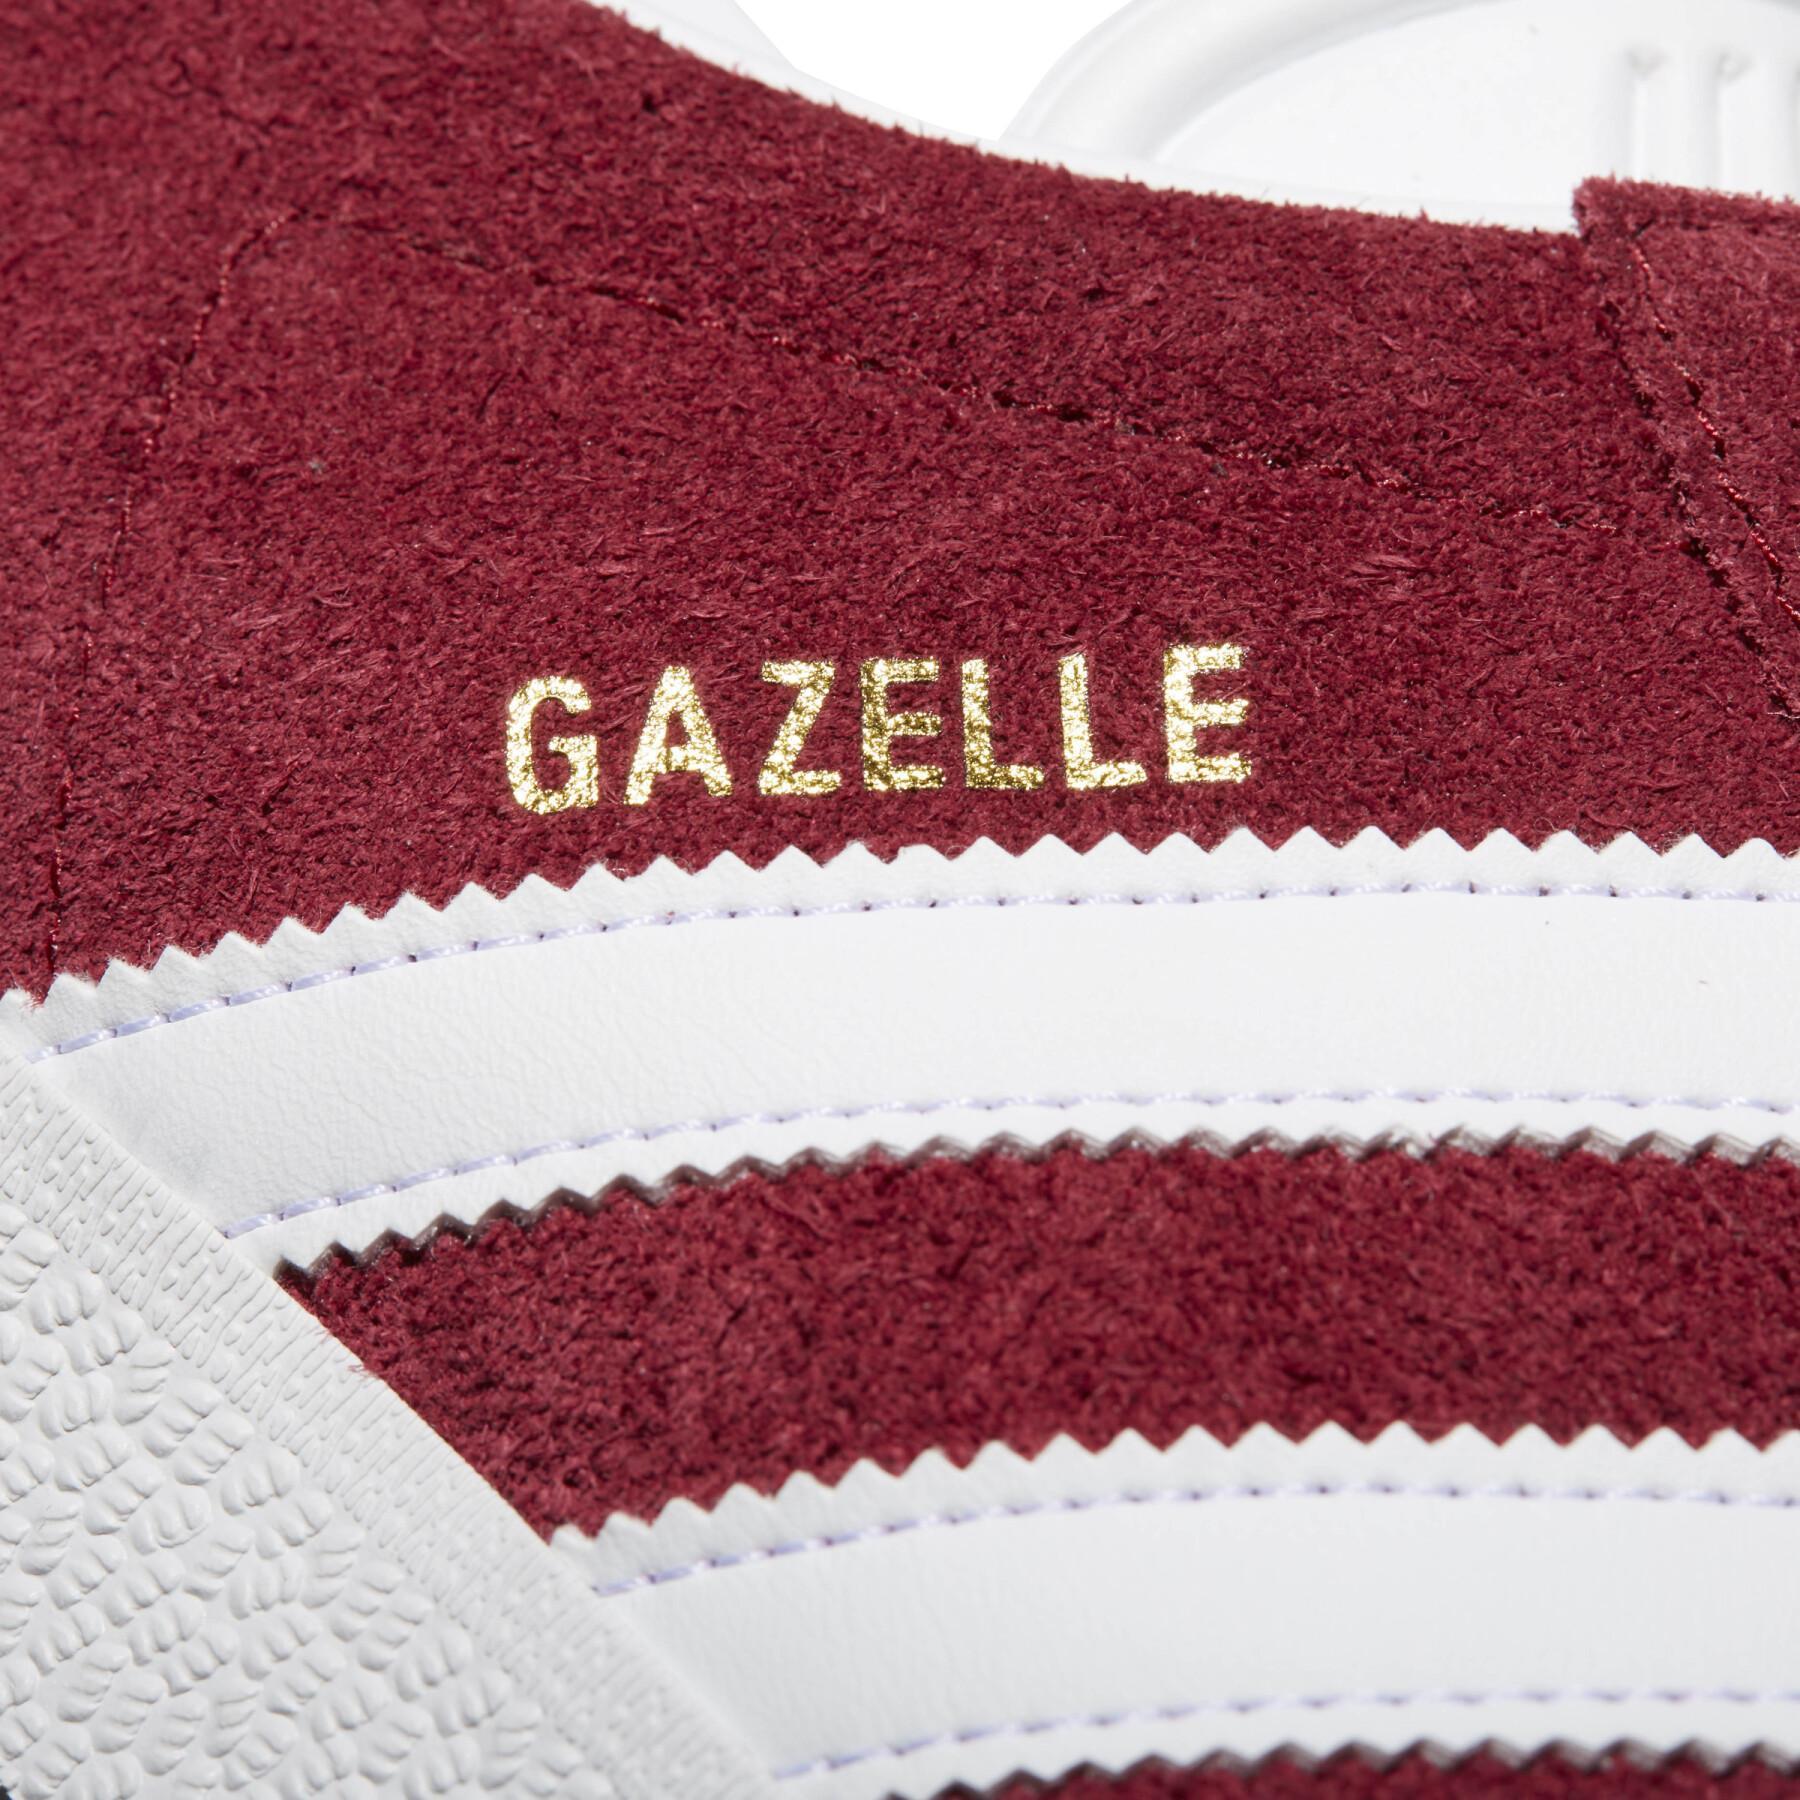 Baskets adidas Gazelle